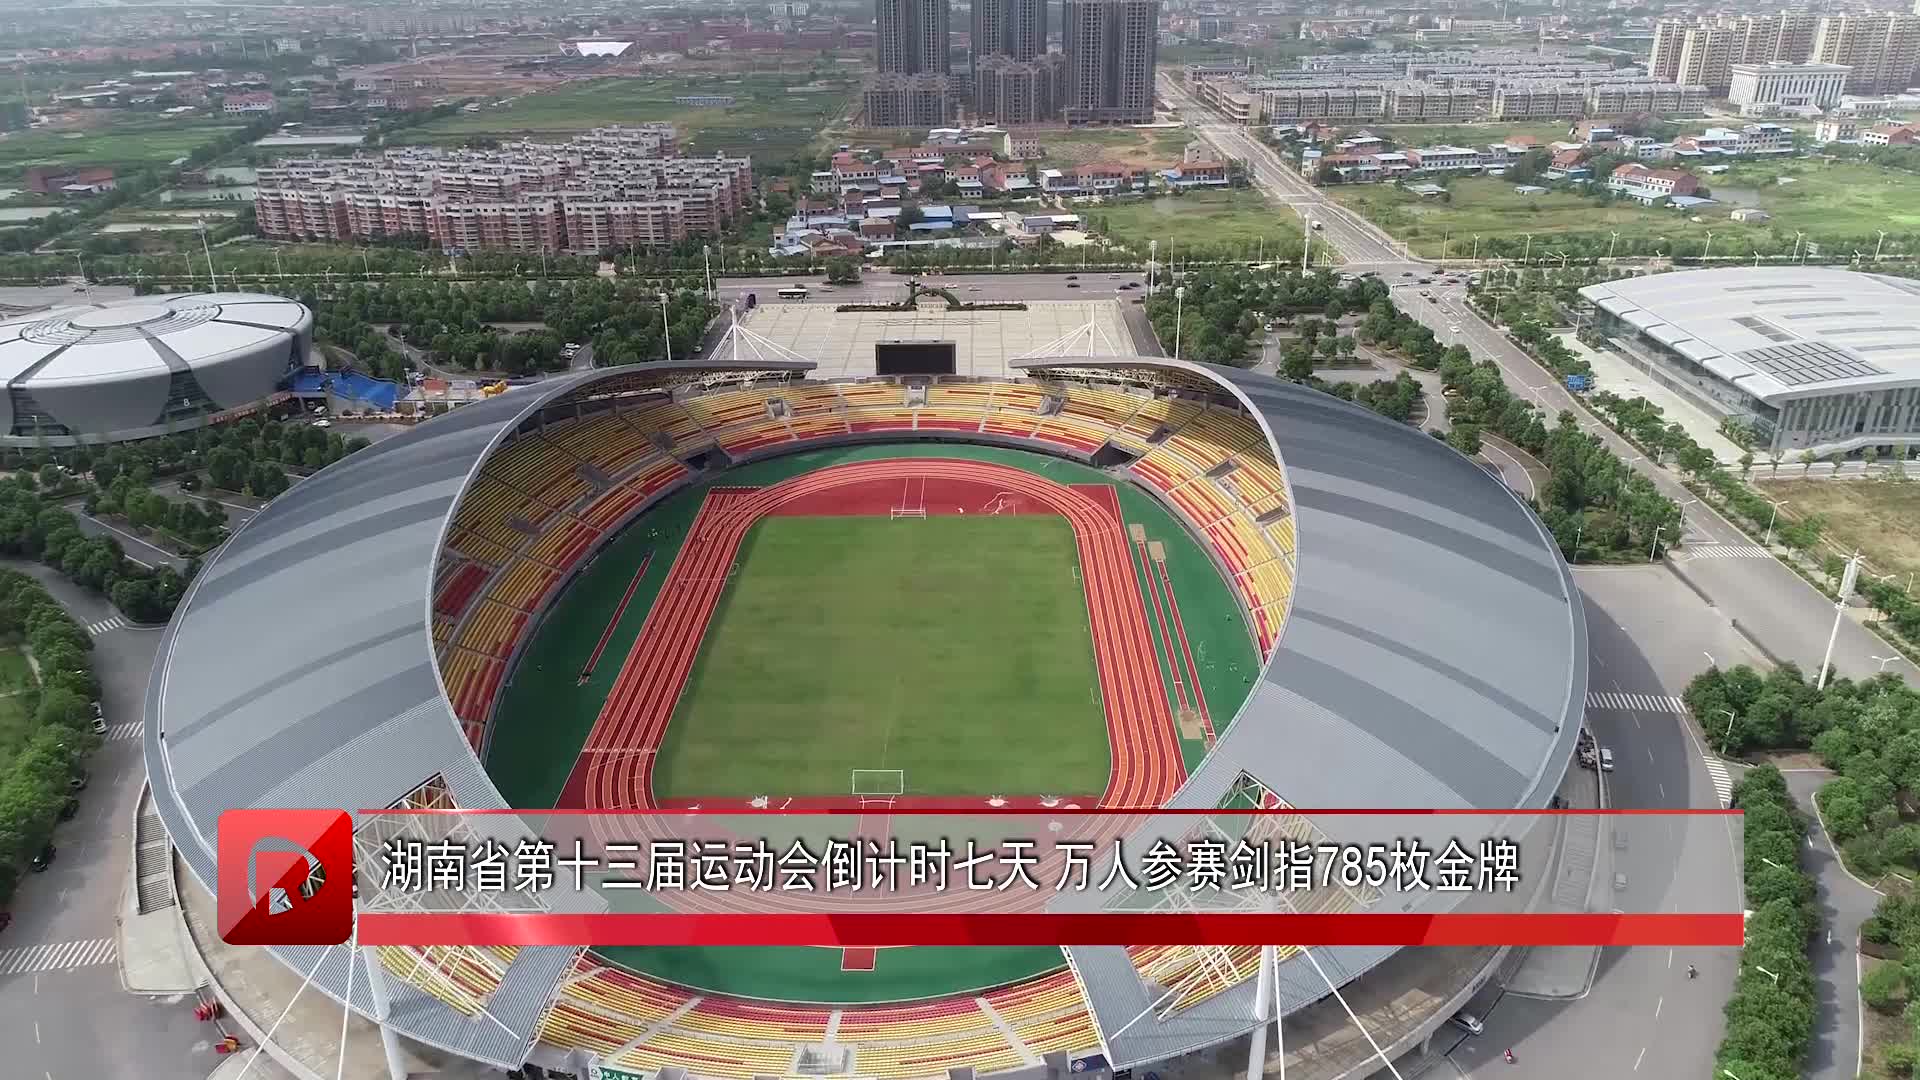 湖南省第十三届运动会倒计时七天 万人参赛剑指785枚金牌